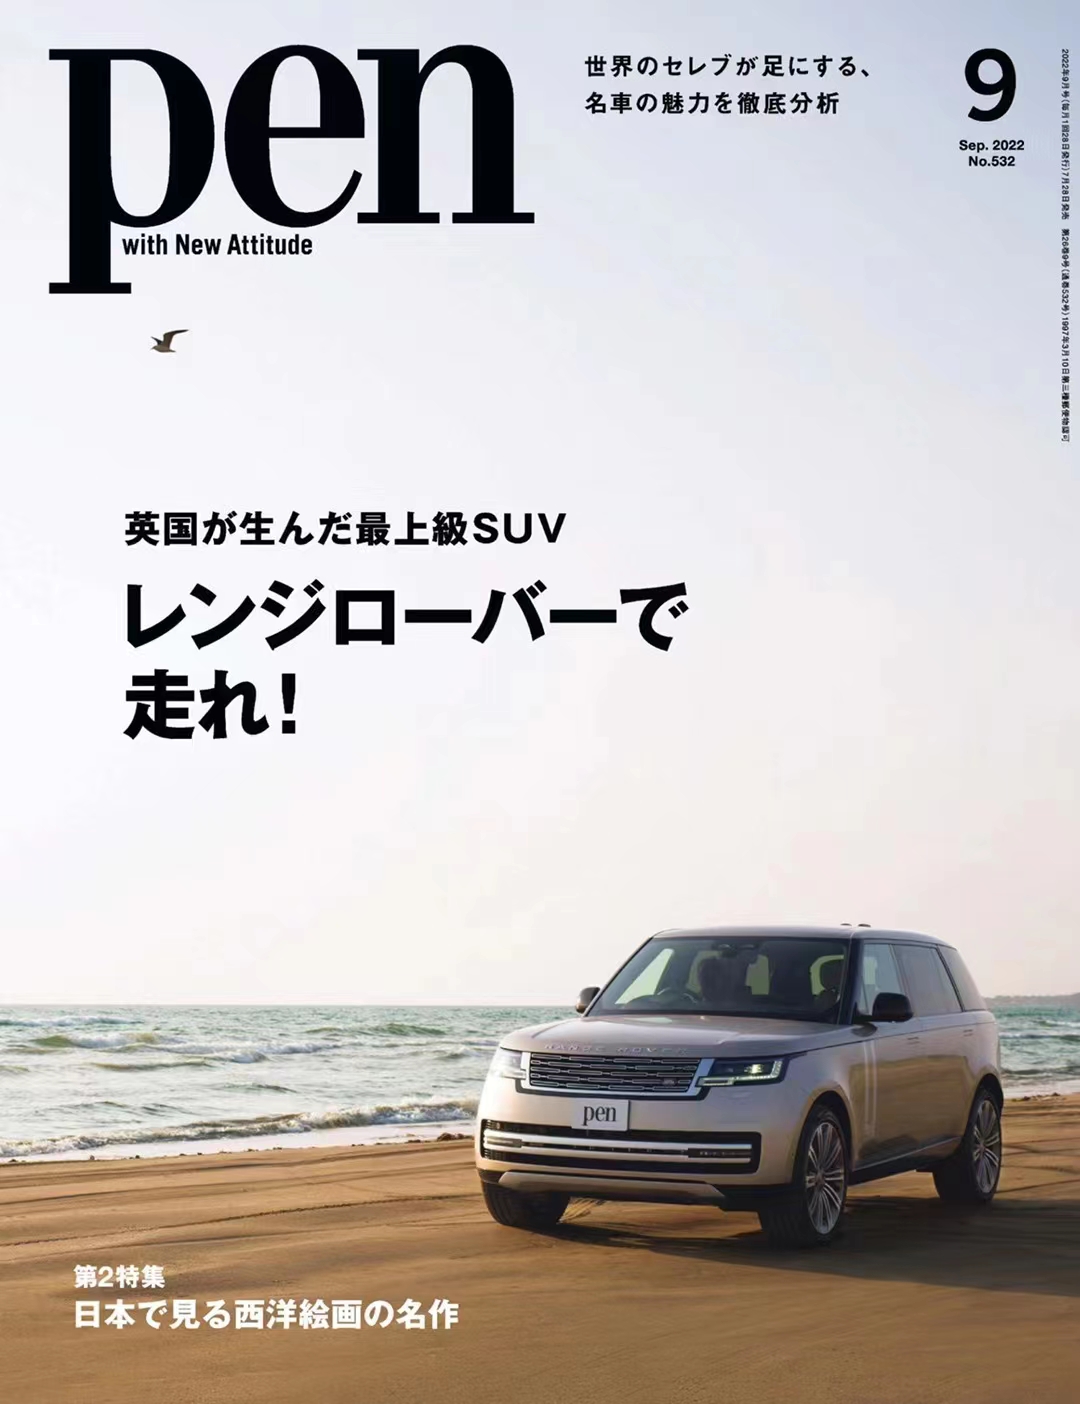 日本 021 Pen 2022年9月 合集日本时尚潮流男士生活家居杂志「百度网盘下载」